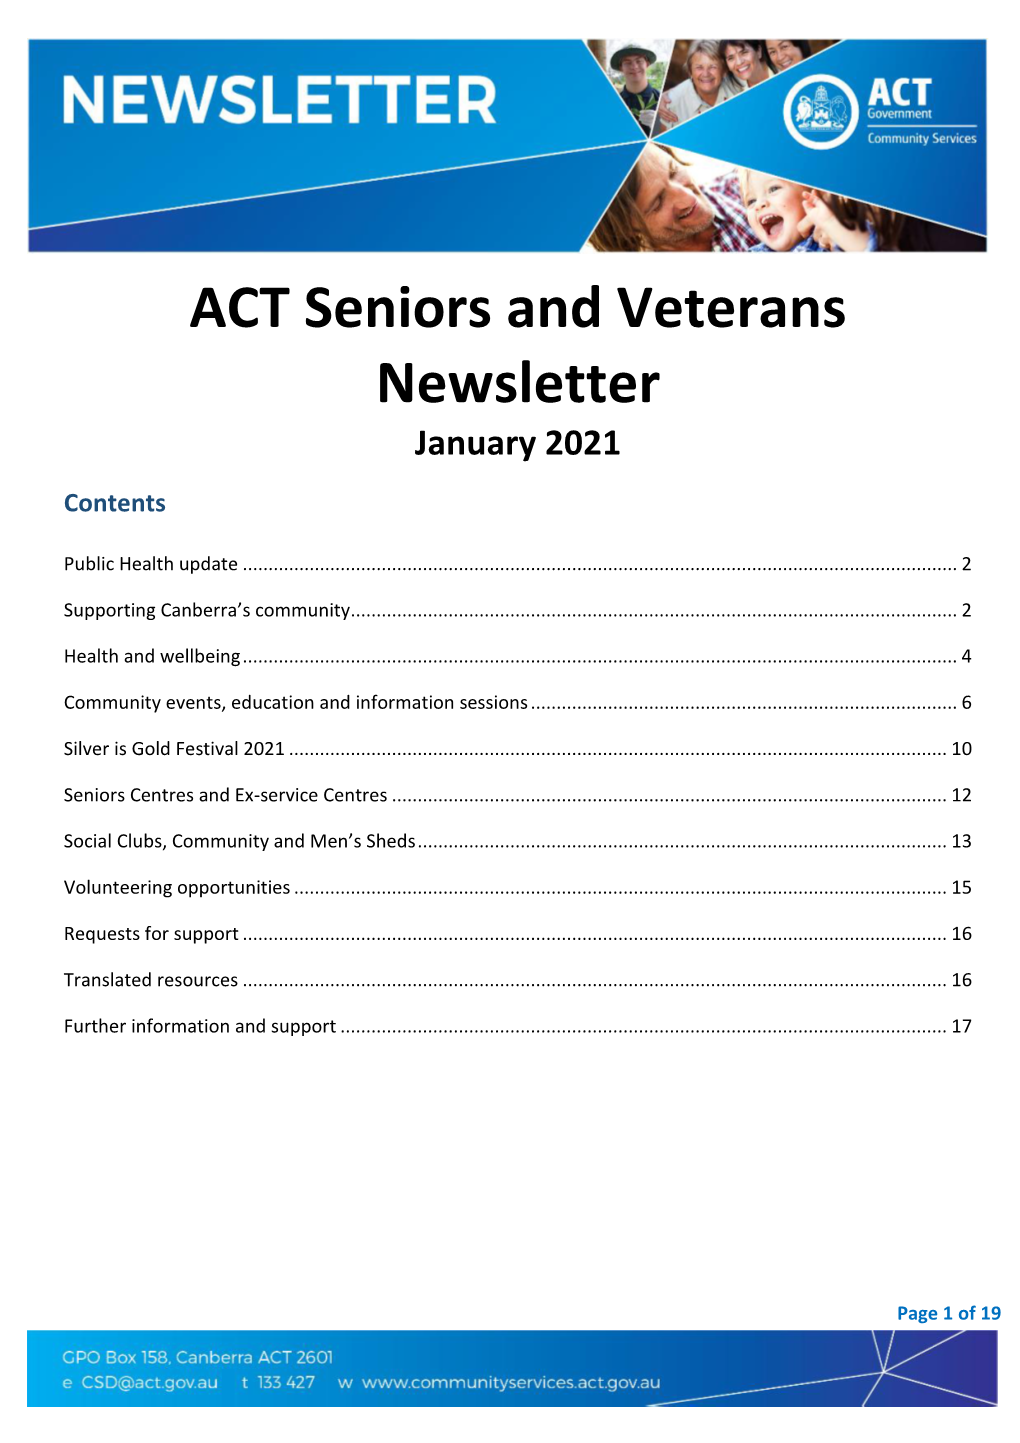 January 2021 ACT Seniors and Veterans Newsletter